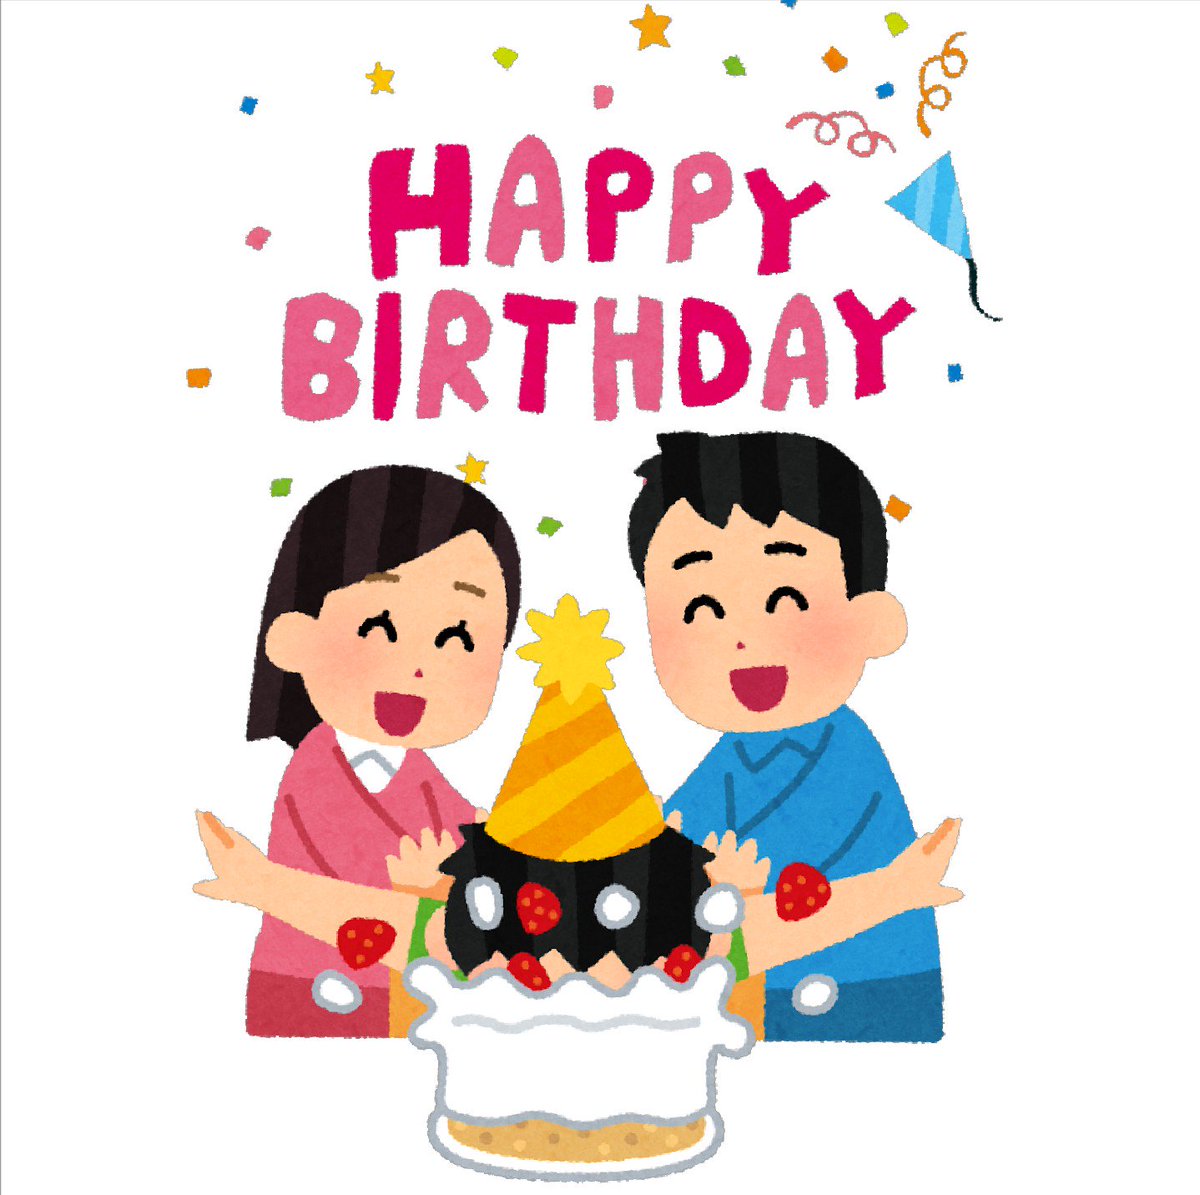 まいチクをいらすとやで再現 Twitterissa お誕生日おめでとうございます 使ったイラスト 2枚 誕生日のイラスト Happy Birthday タイトル文字 誕生日ケーキに顔を突っ込まれる人のイラスト